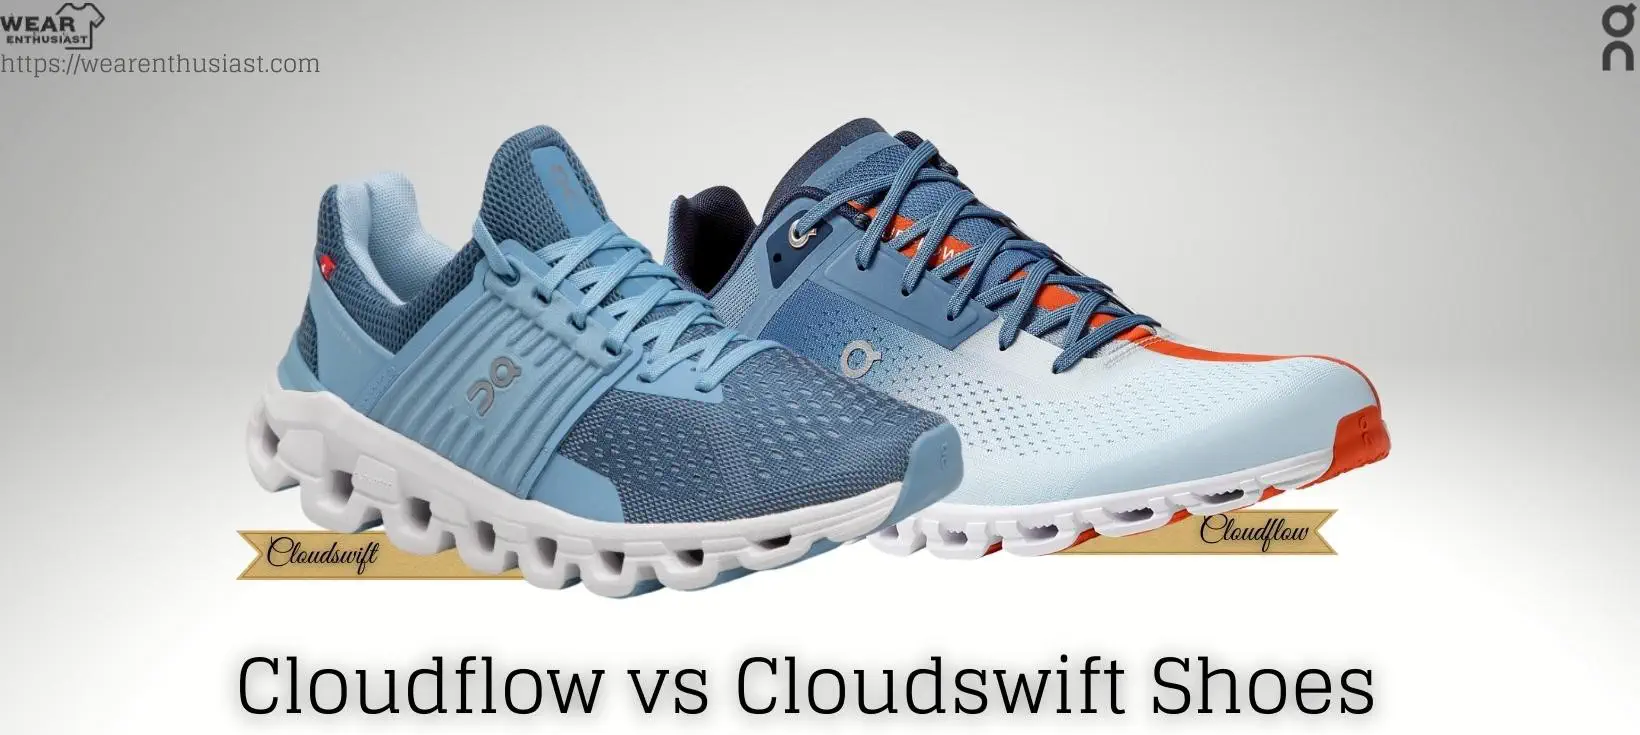 Cloudflow vs Cloudswift Shoes